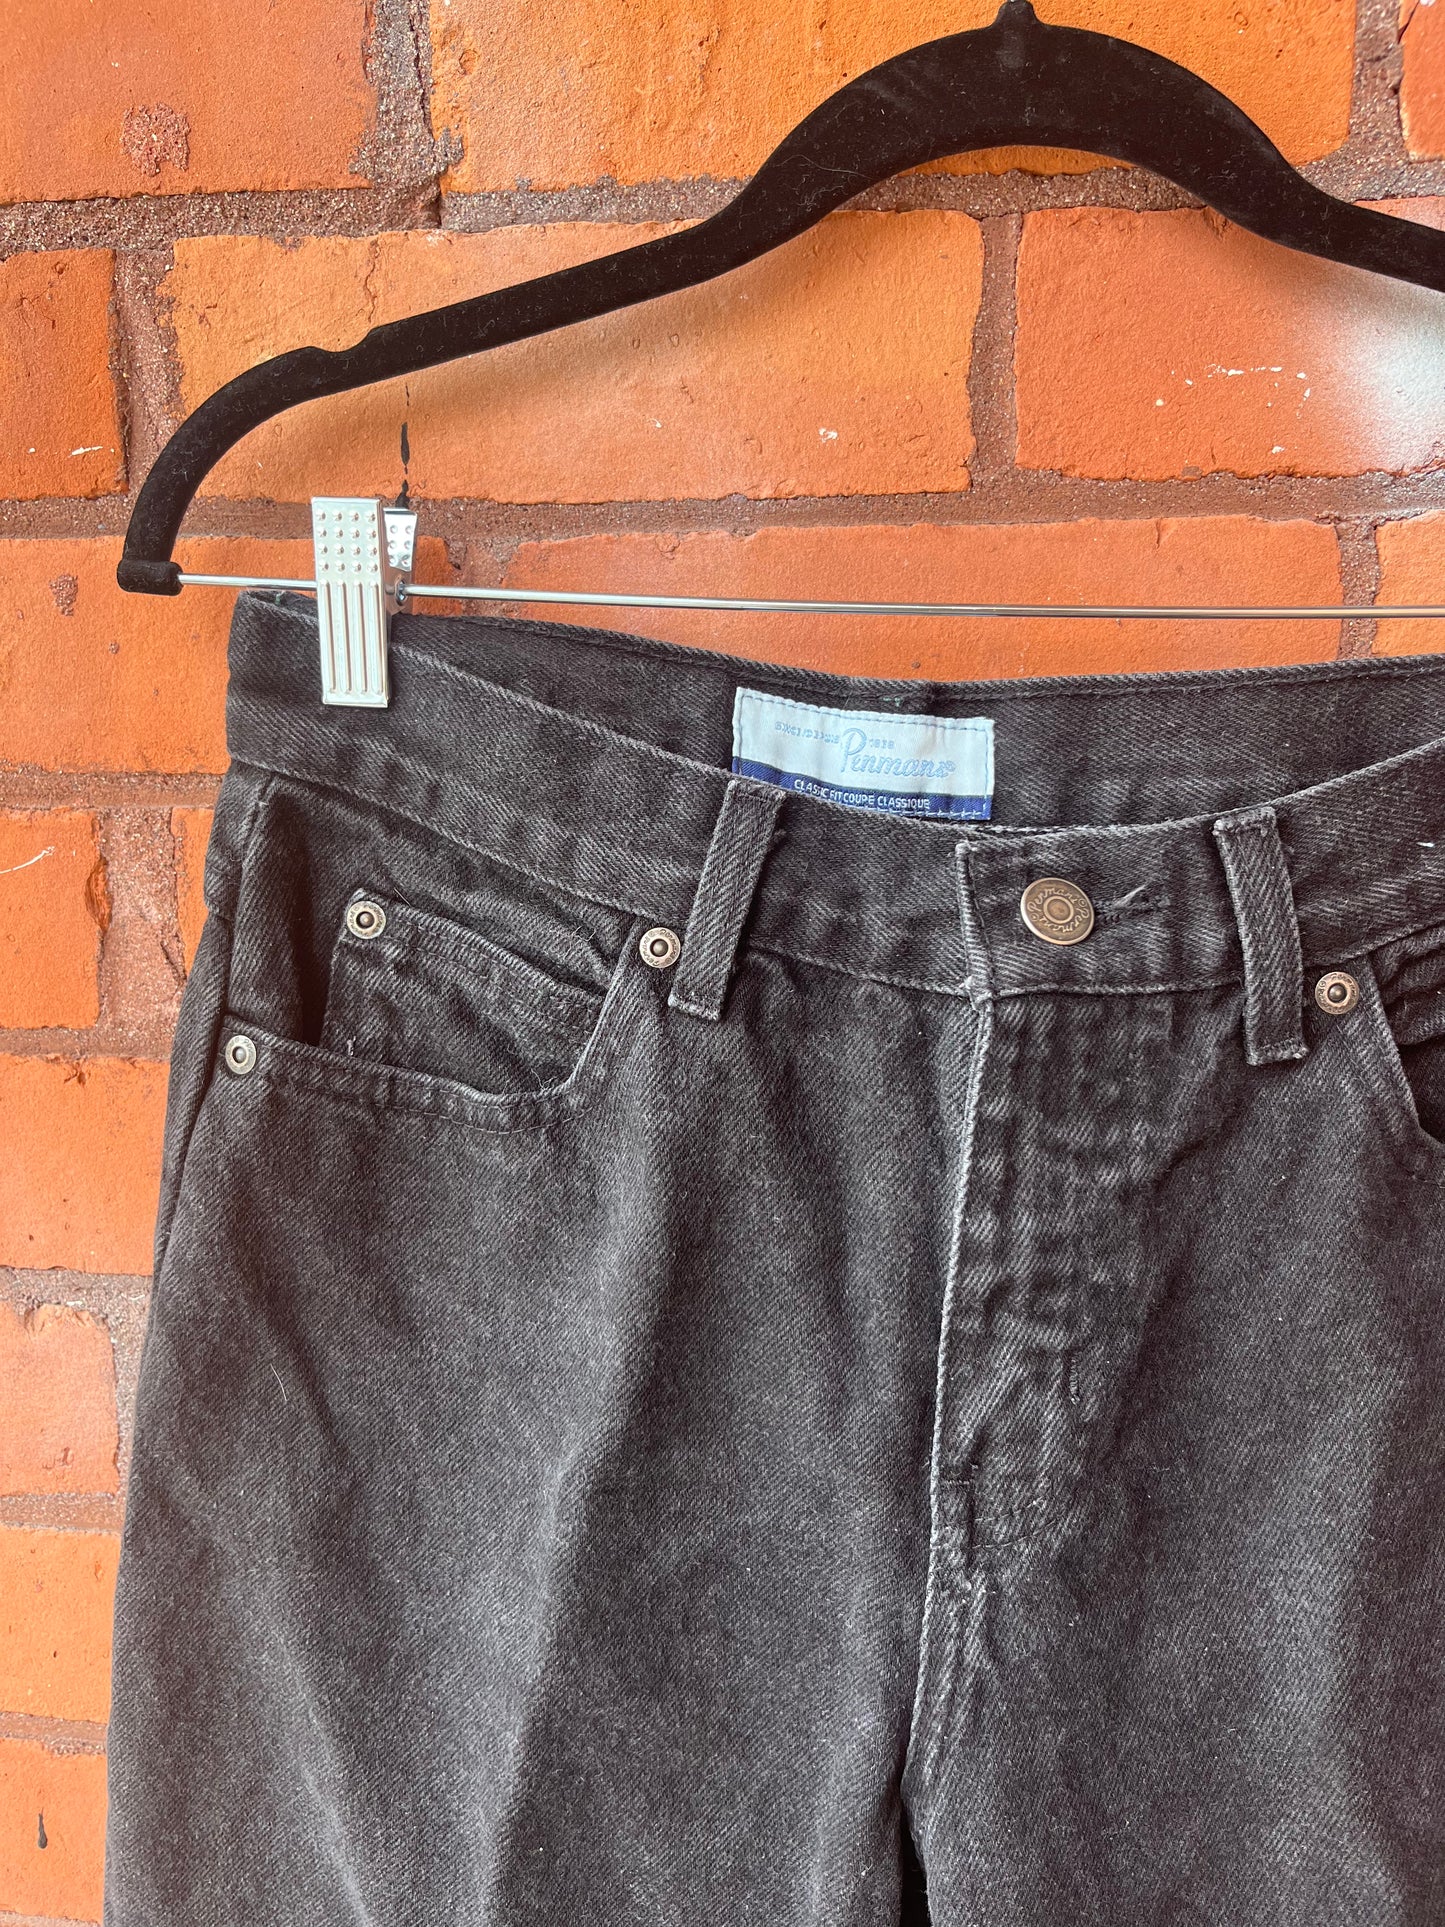 90’s Vintage Faded Black Straight Leg Jeans / 27 Waist